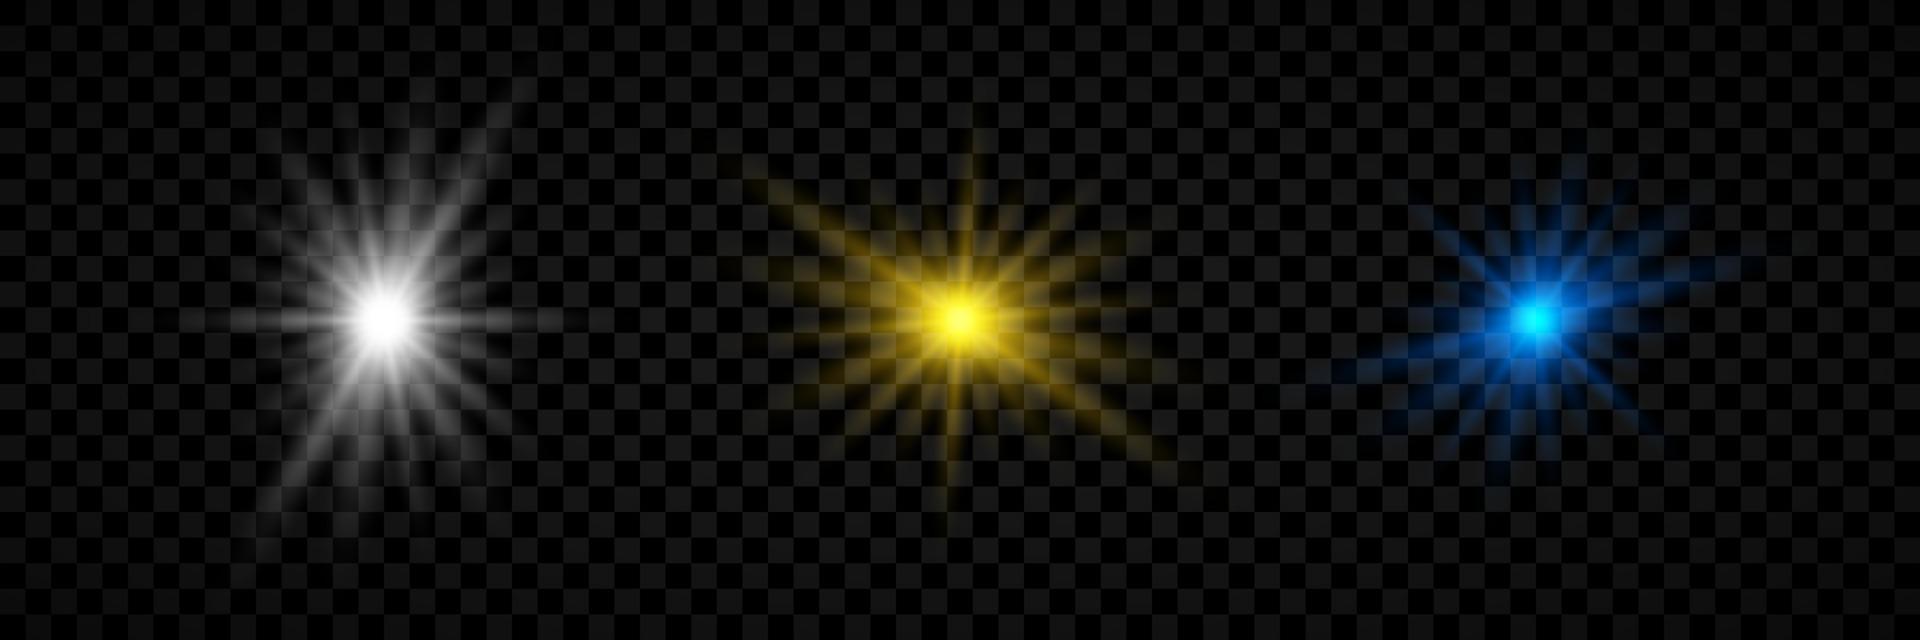 effet de lumière des fusées éclairantes. ensemble de trois effets de starburst de lumières rougeoyantes blanches, jaunes et bleues avec des étincelles sur un fond transparent. illustration vectorielle vecteur